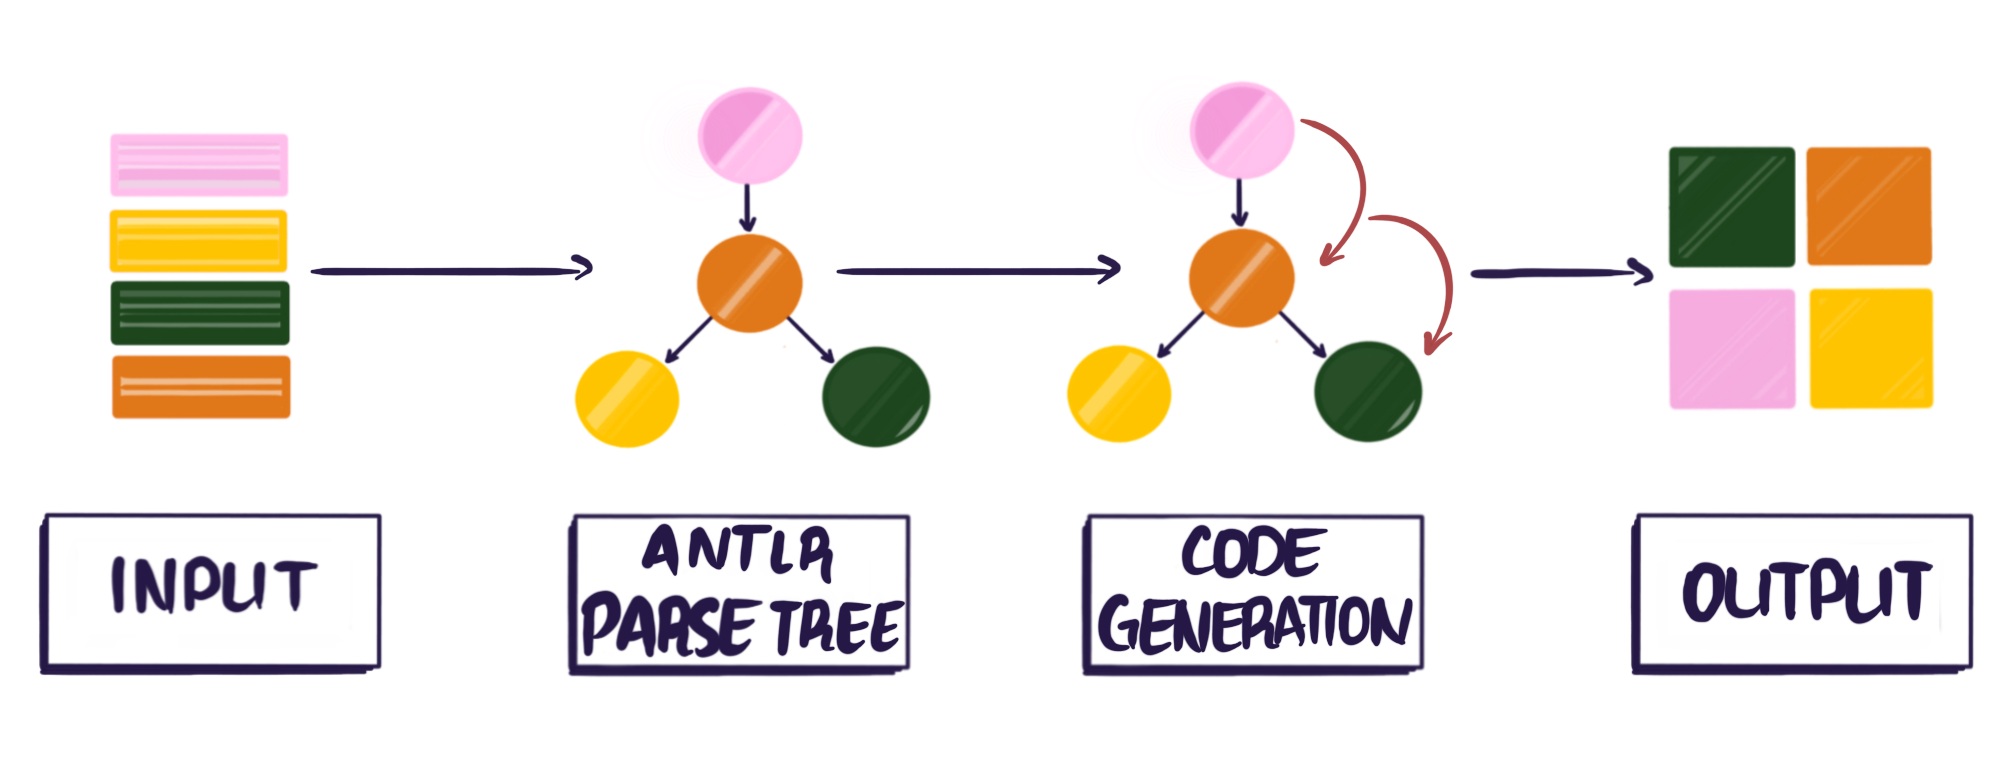 输入经由ANTLR解析树和代码生成输出变换